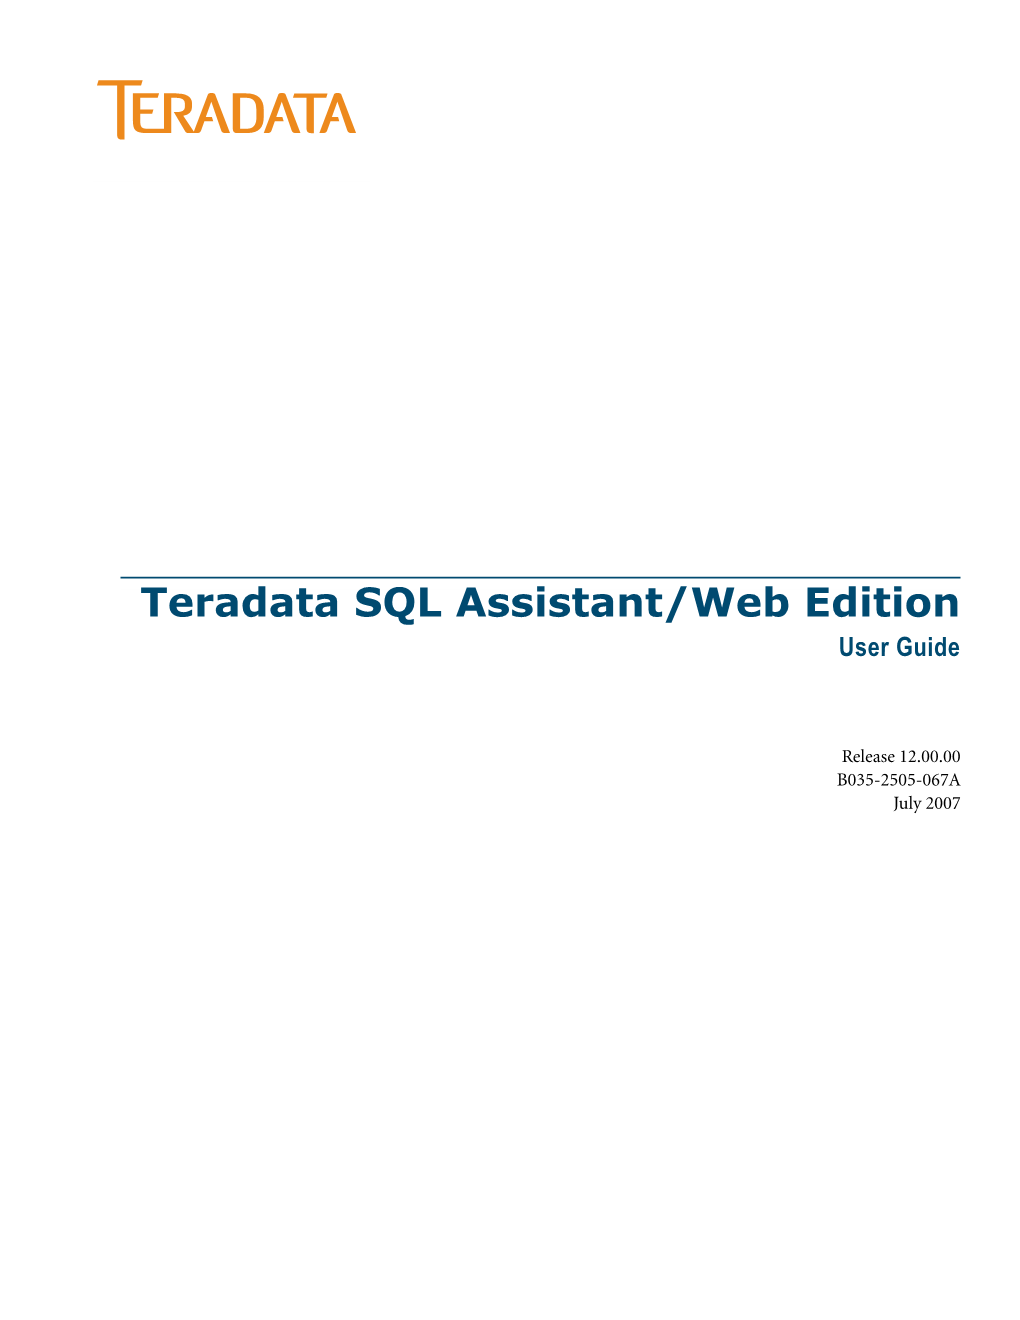 Teradata SQL Assistant/Web Edition User Guide